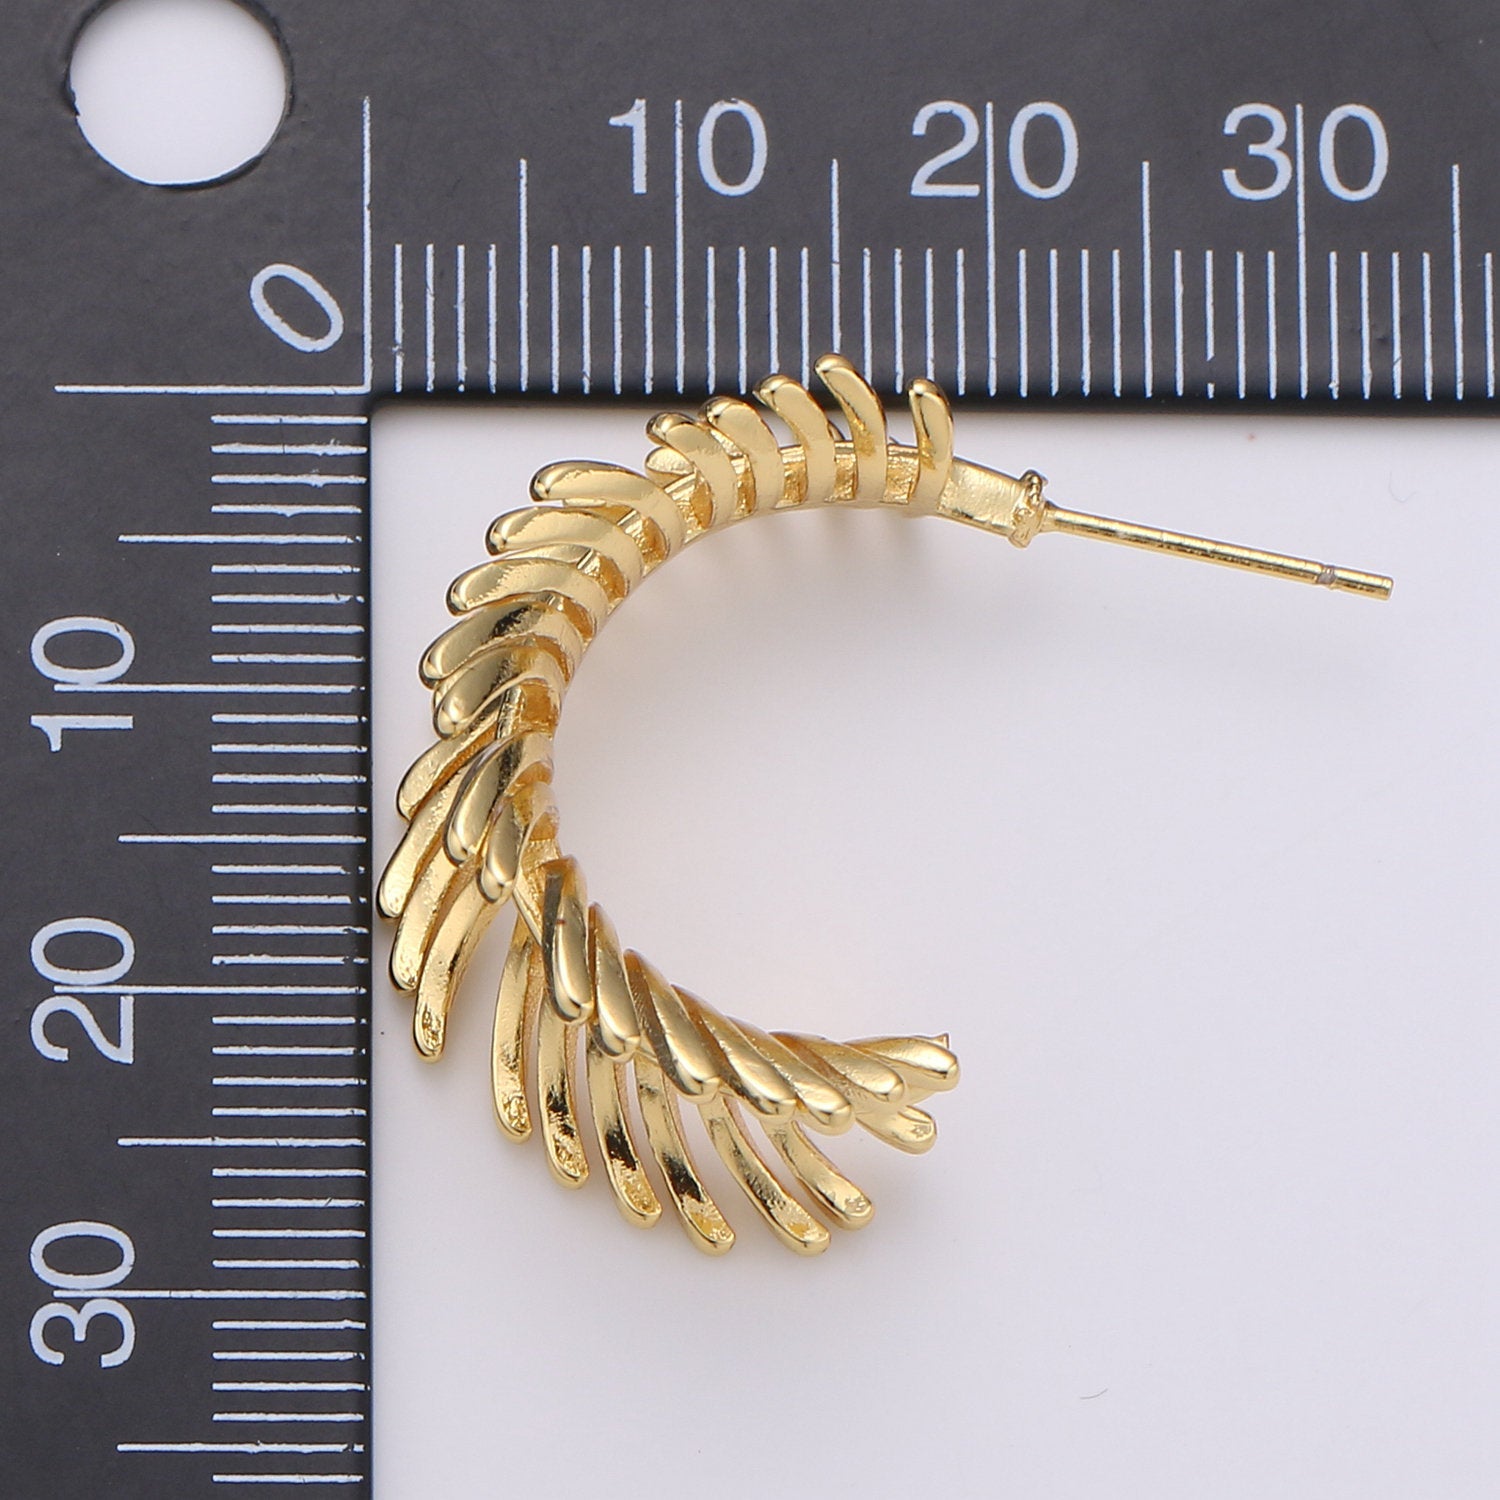 Gold Feather Hoop Earrings Boho Gold Leaf Hoop Earrings Autumn Jewelry Festival Earrings Gift for Her Bohemian Earrings Big Hoop Earring - DLUXCA